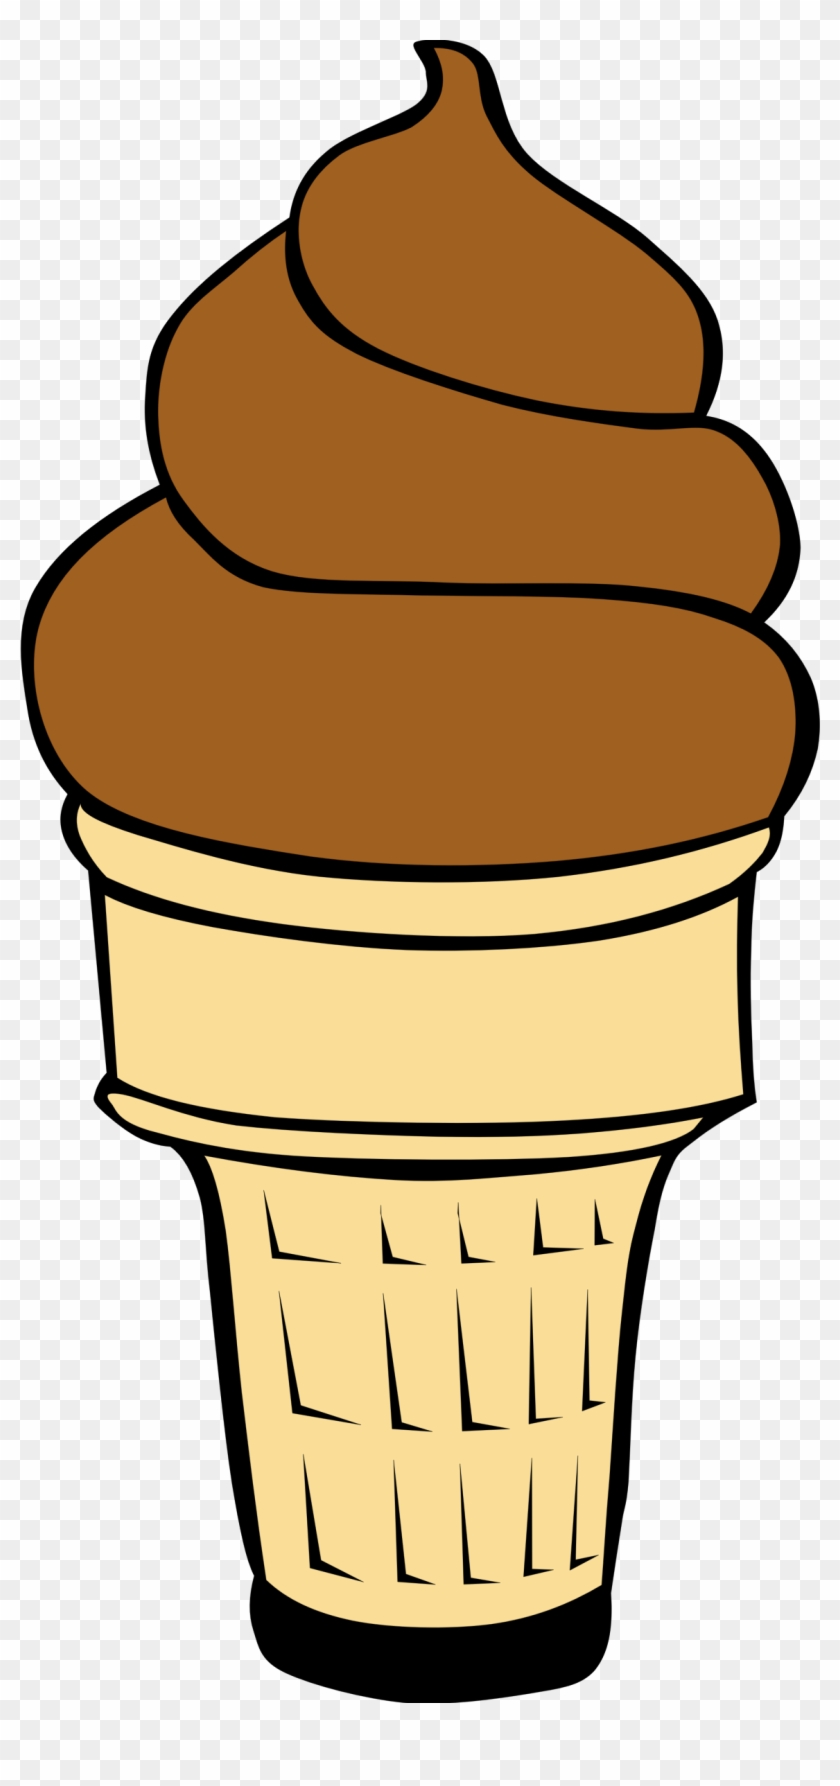 Clip Art Of Ice Ceram Cone - Ice Cream Cone Clip Art #48551